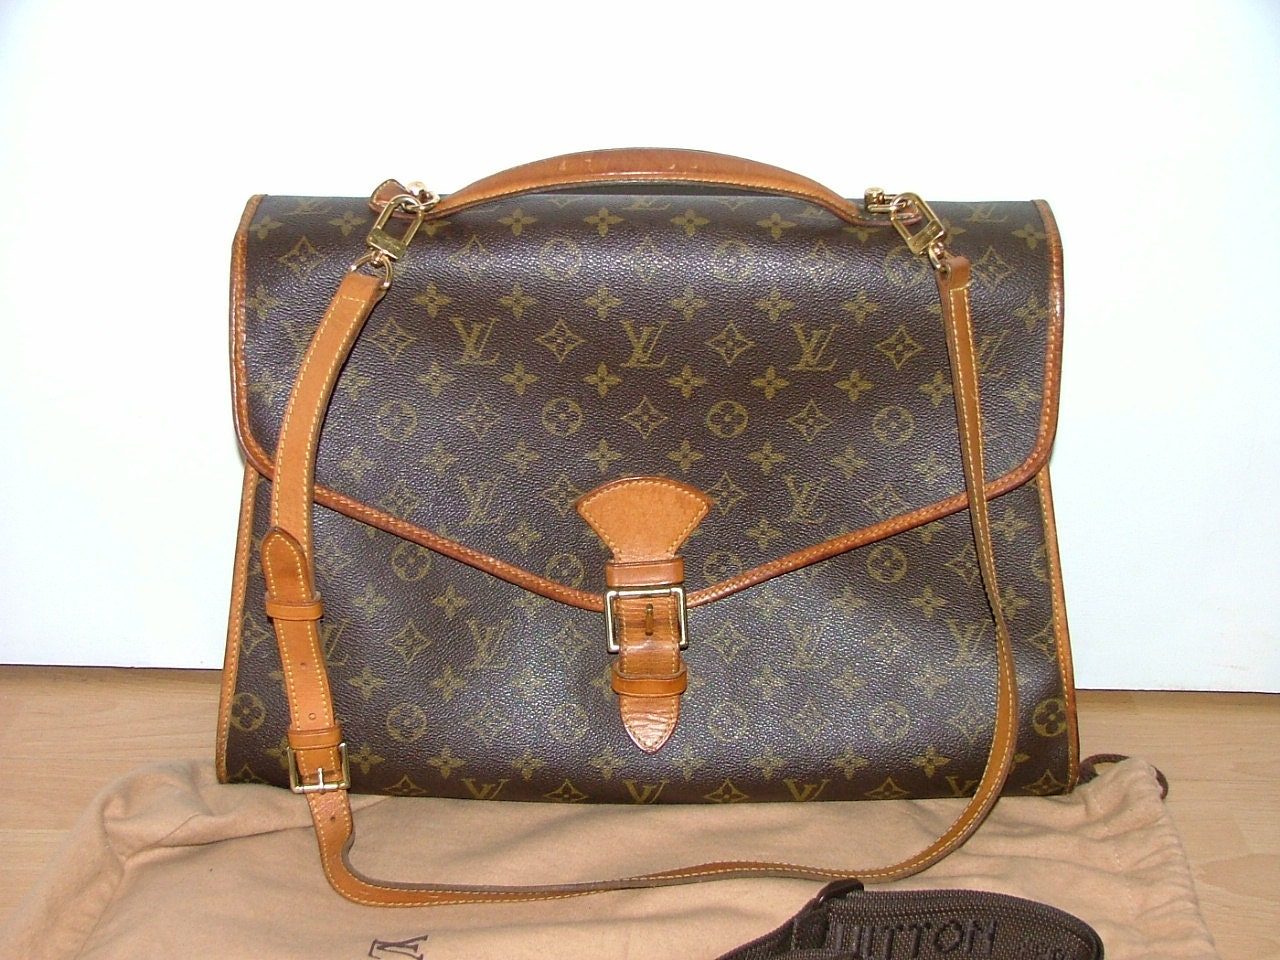 Vintage Louis Vuitton bag Beverly briefcase large satchel